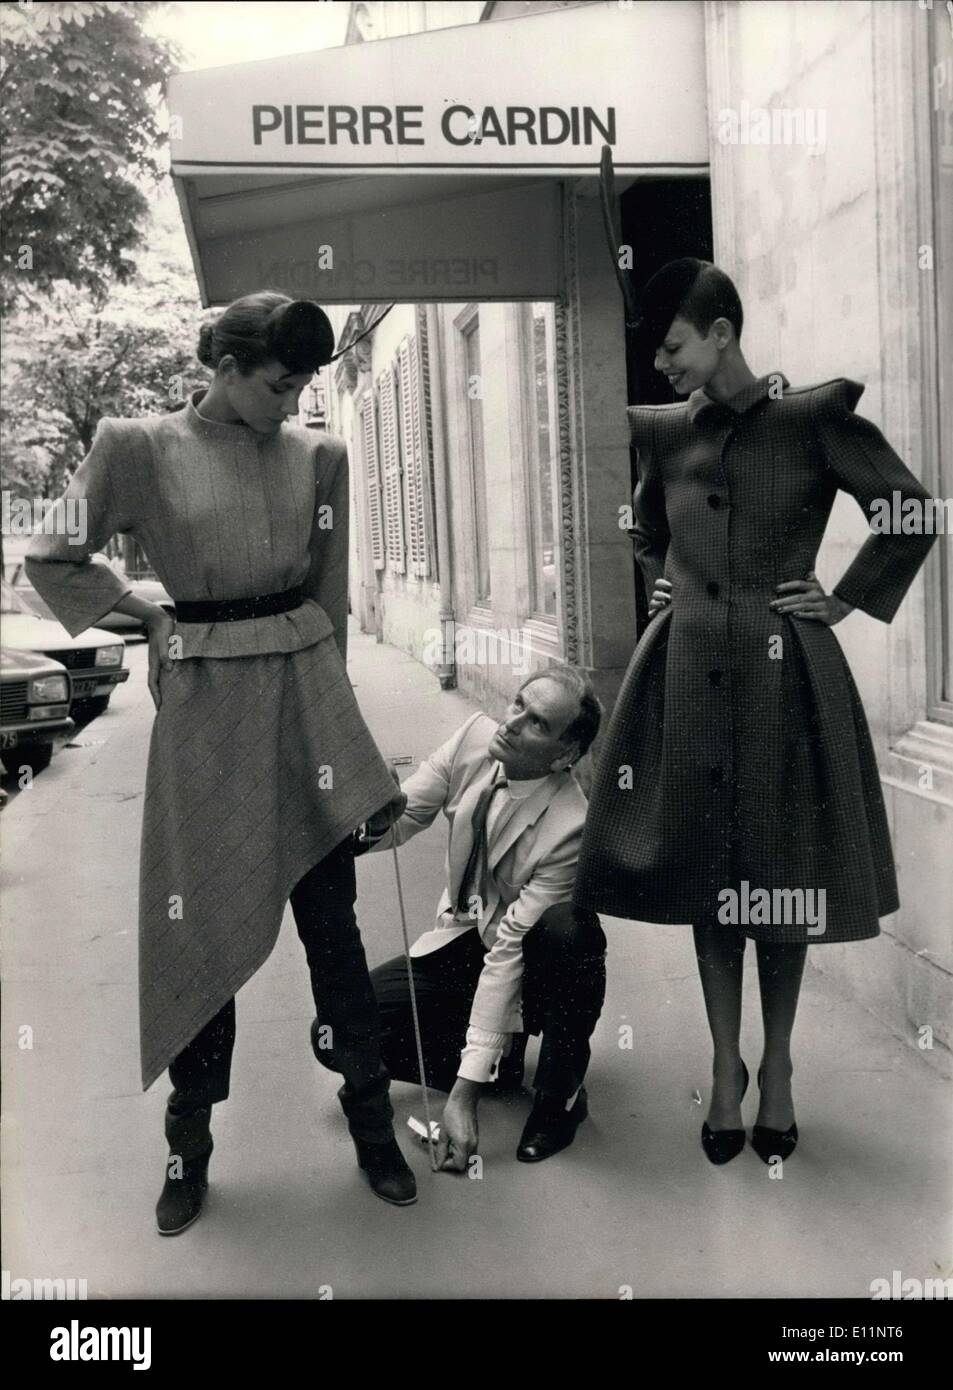 22. Juli 1979 - Pierre Cardin und seine zwei Modelle, die Stücke aus seiner aktuellen Kollektion tragen. Auf der linken Seite trägt sie ein Sakko mit einem quadratischen Schulter und ein asymmetrischer Rock über Hose ausgestattet. Die Jacke ist Beige und Ziegel-rot Tartan und die Hosen sind ziegelrot mit Maroon Stiefel. Auf der rechten Seite trägt sie ein Gehrock aus grünen Wolle mit schwarzen Diamanten akzentuiert Schuhe und einen schwarzen Hut mit einer Feder hergestellt. Stockfoto